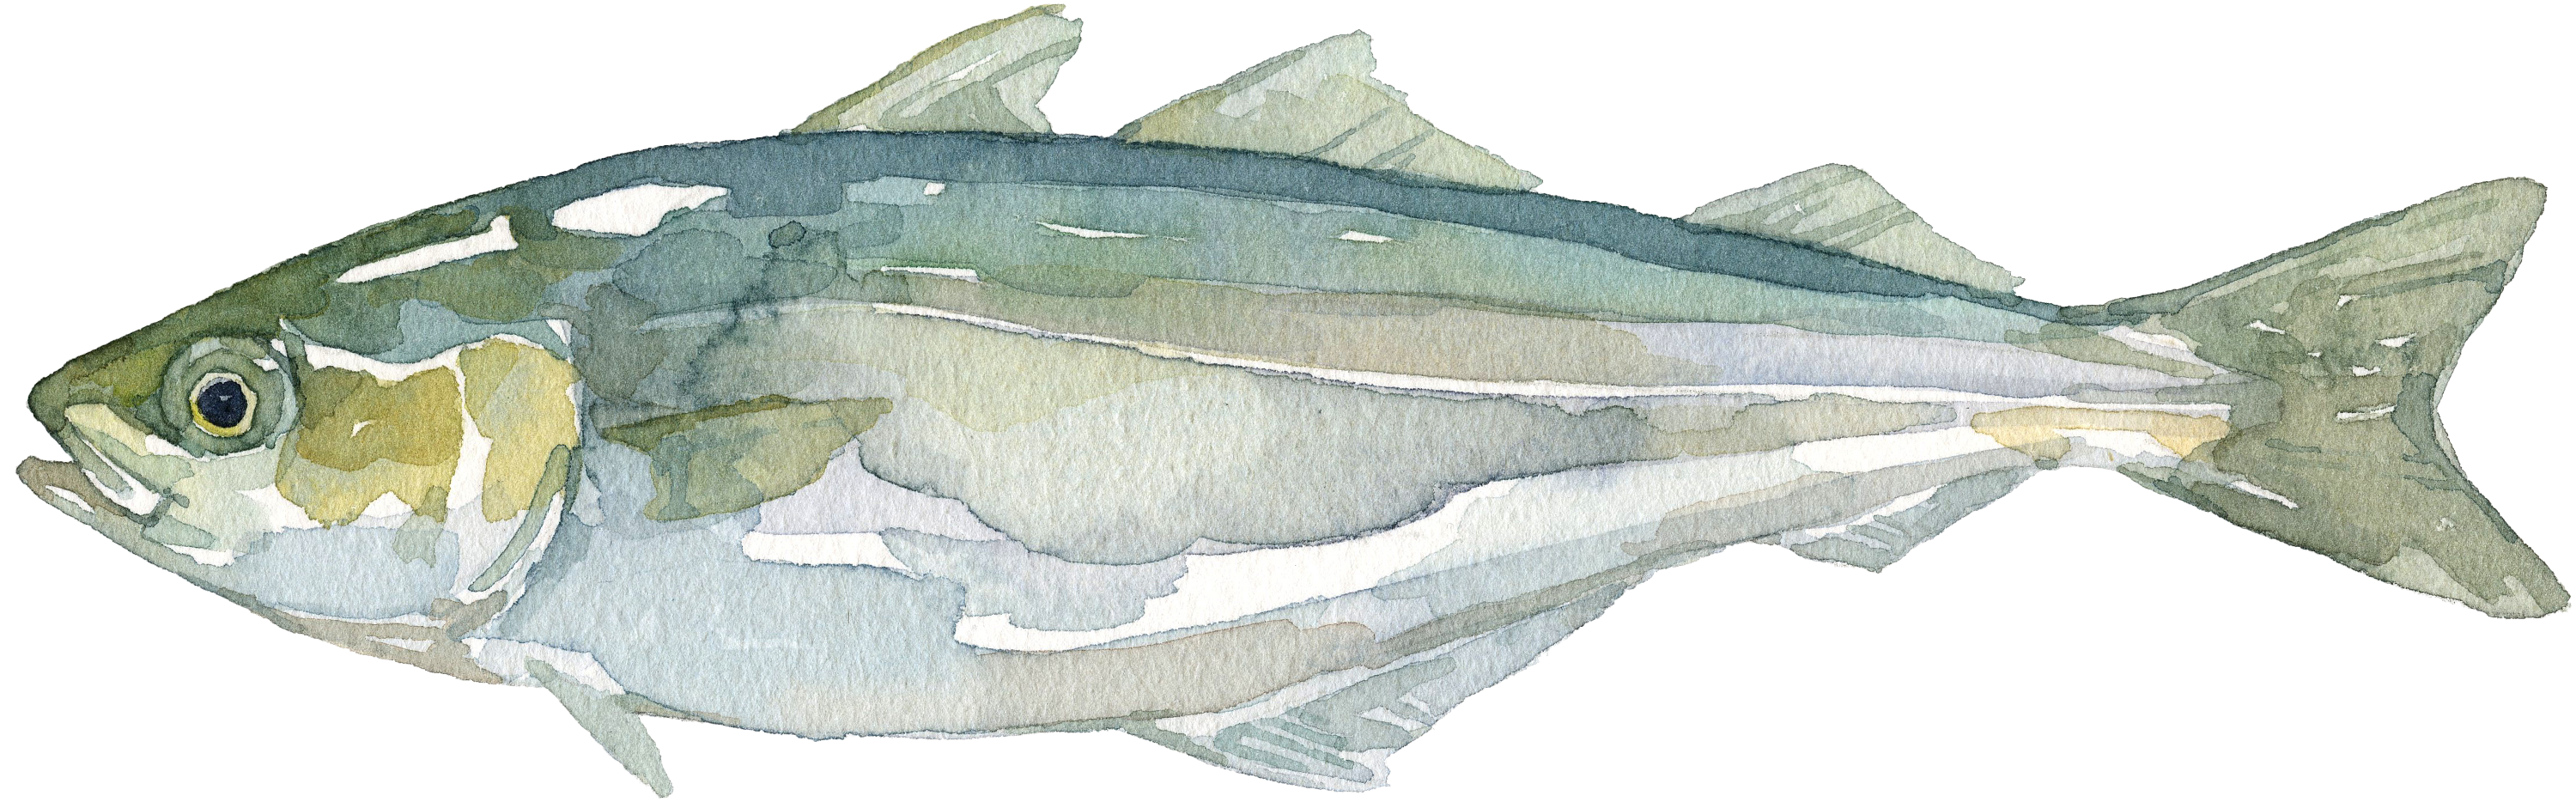 Illustration eines Seelachs